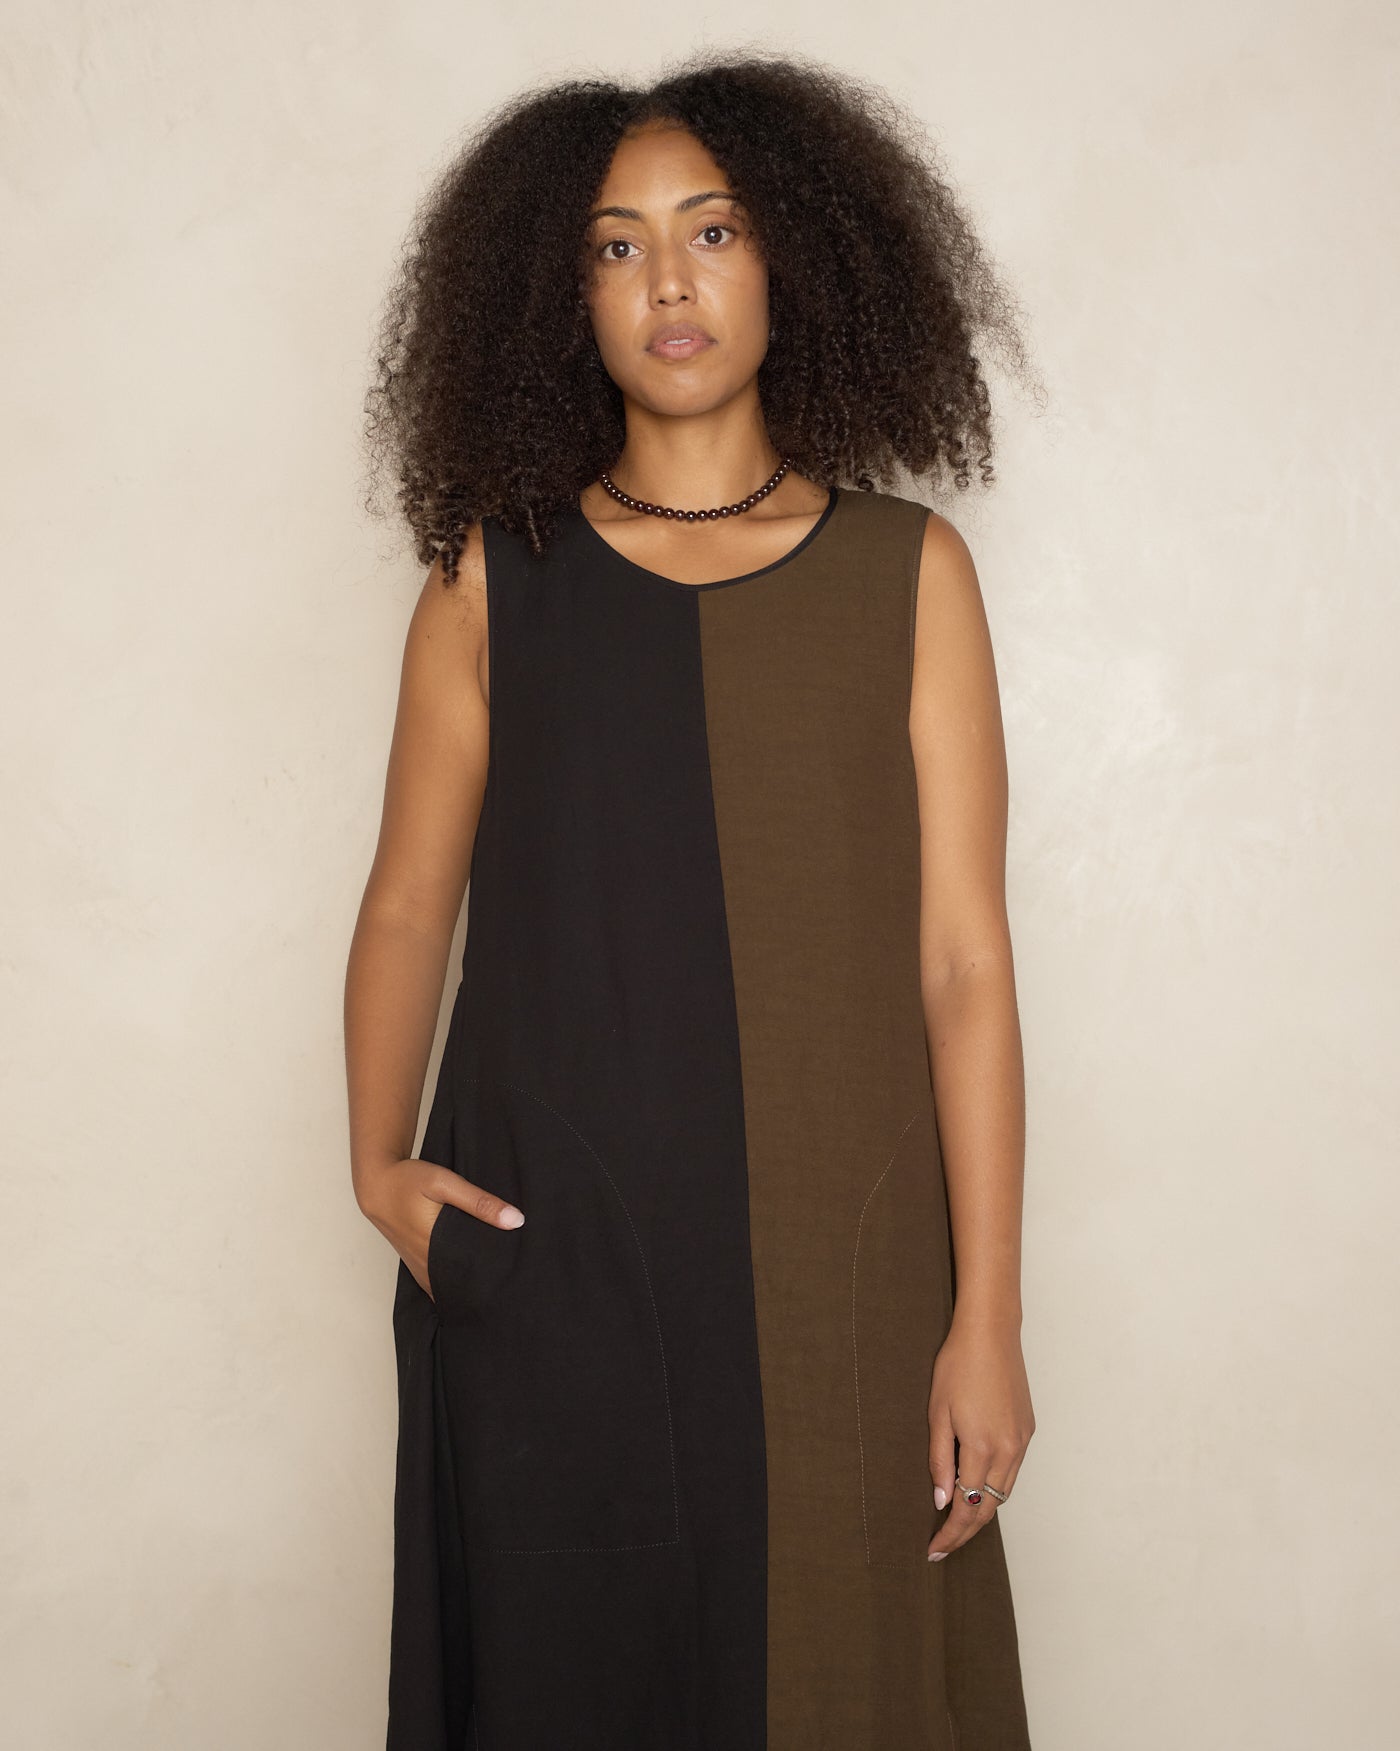 Brown & Black Aerial Dress